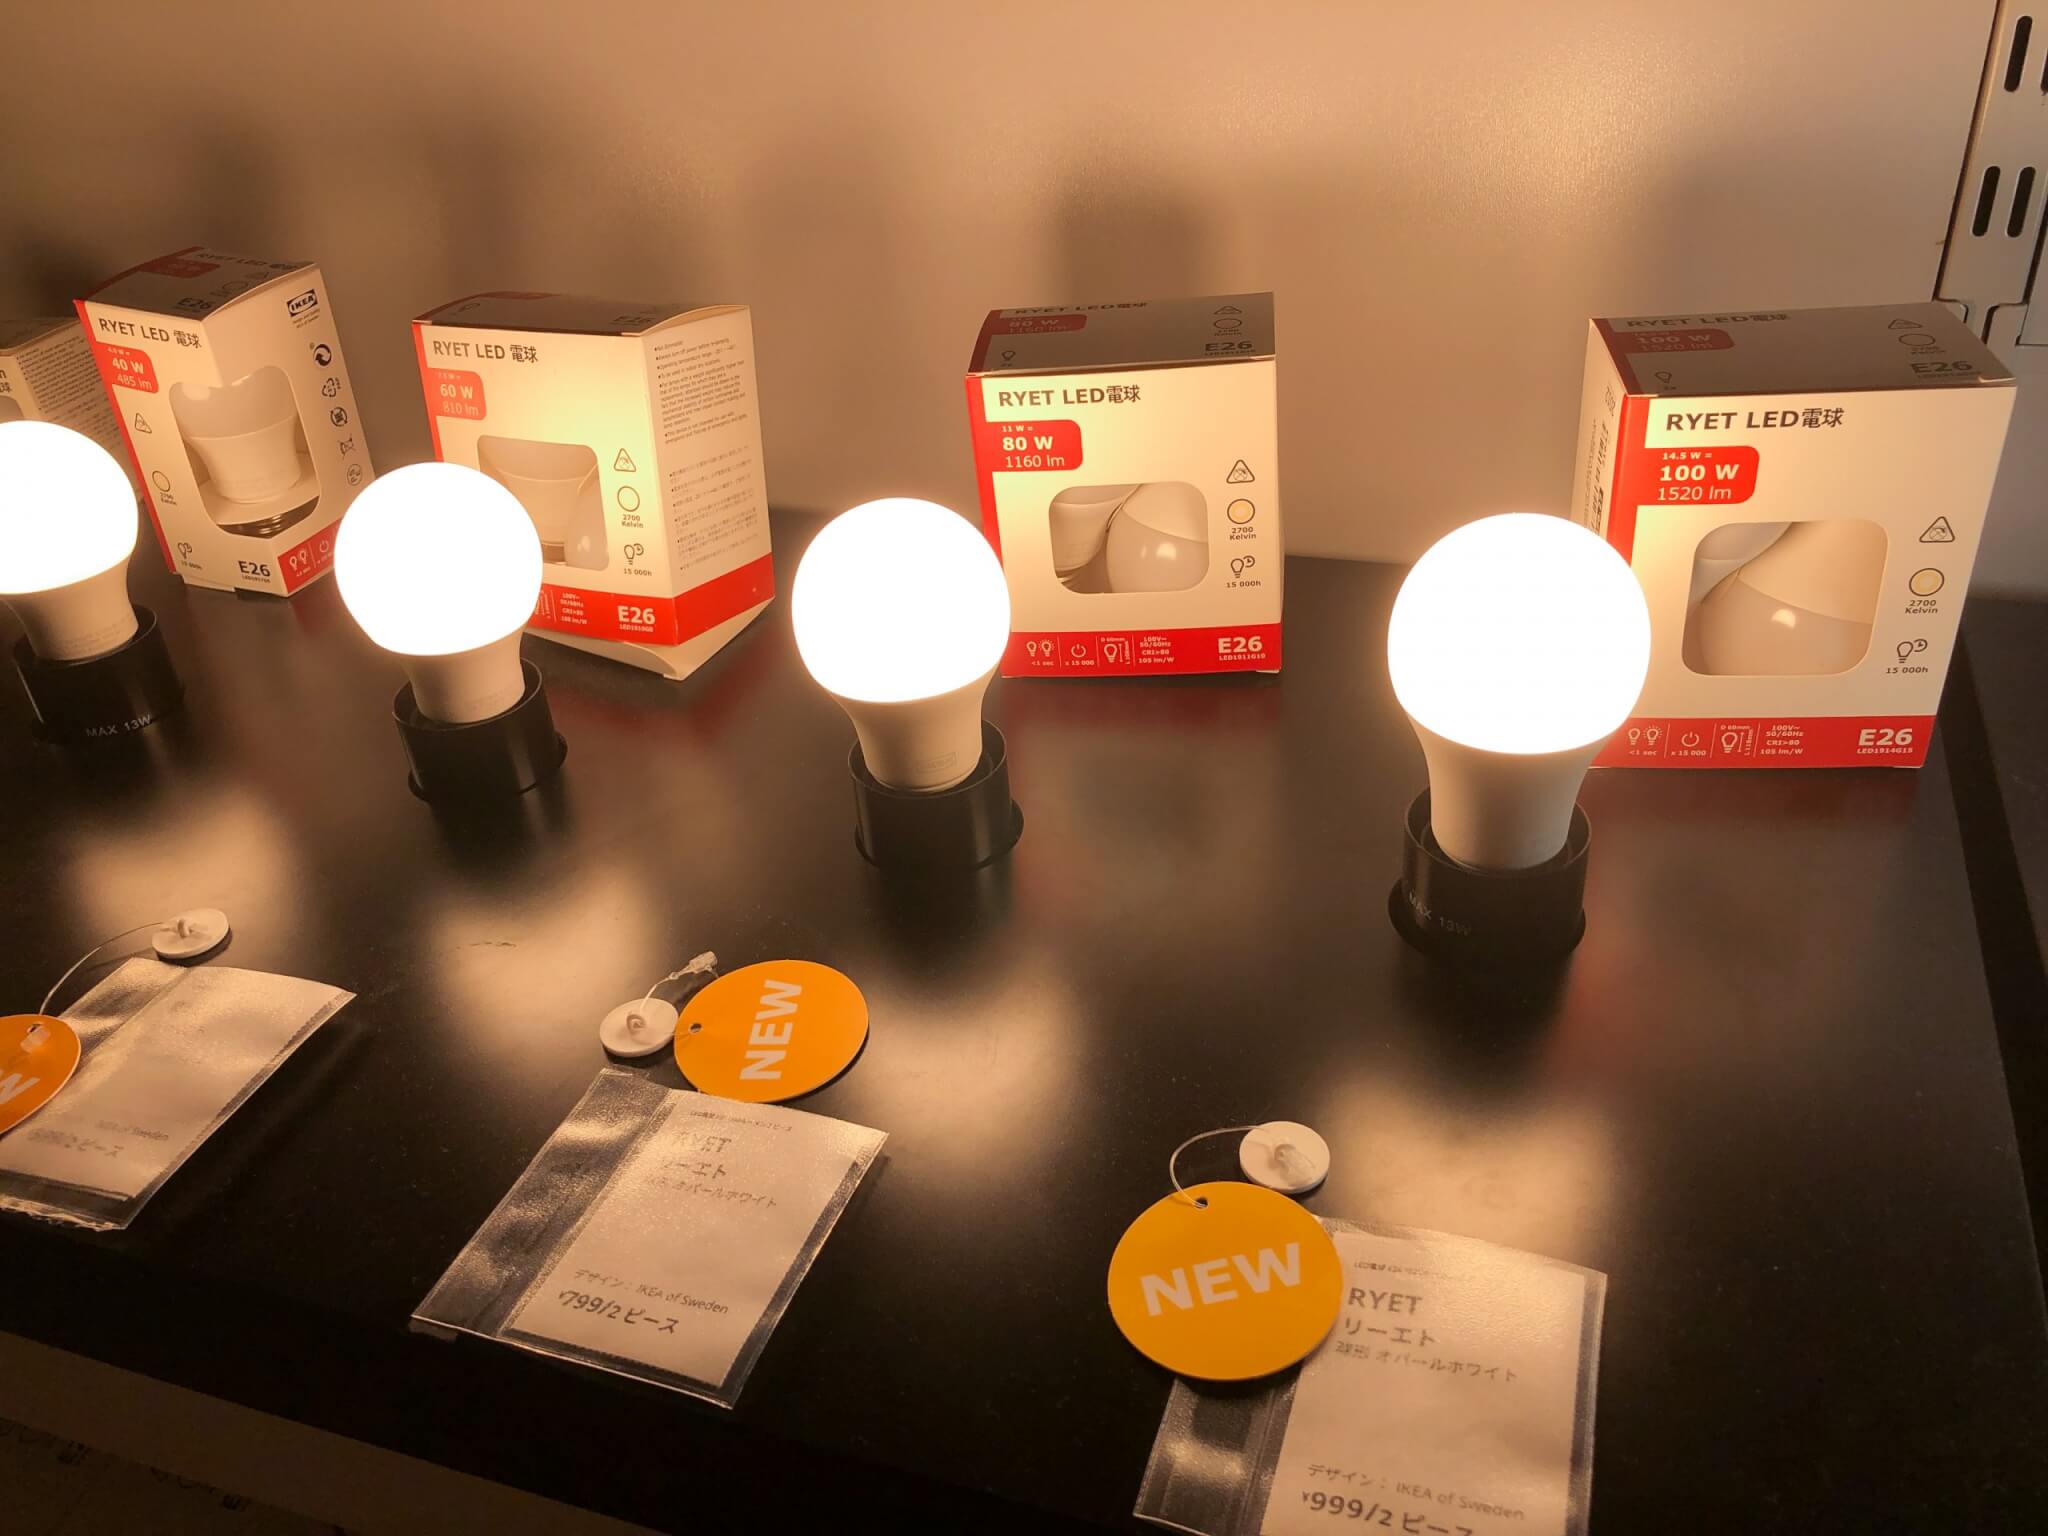 IKEAの99円 RYET LED電球がまた新しくなって明るくなりました 